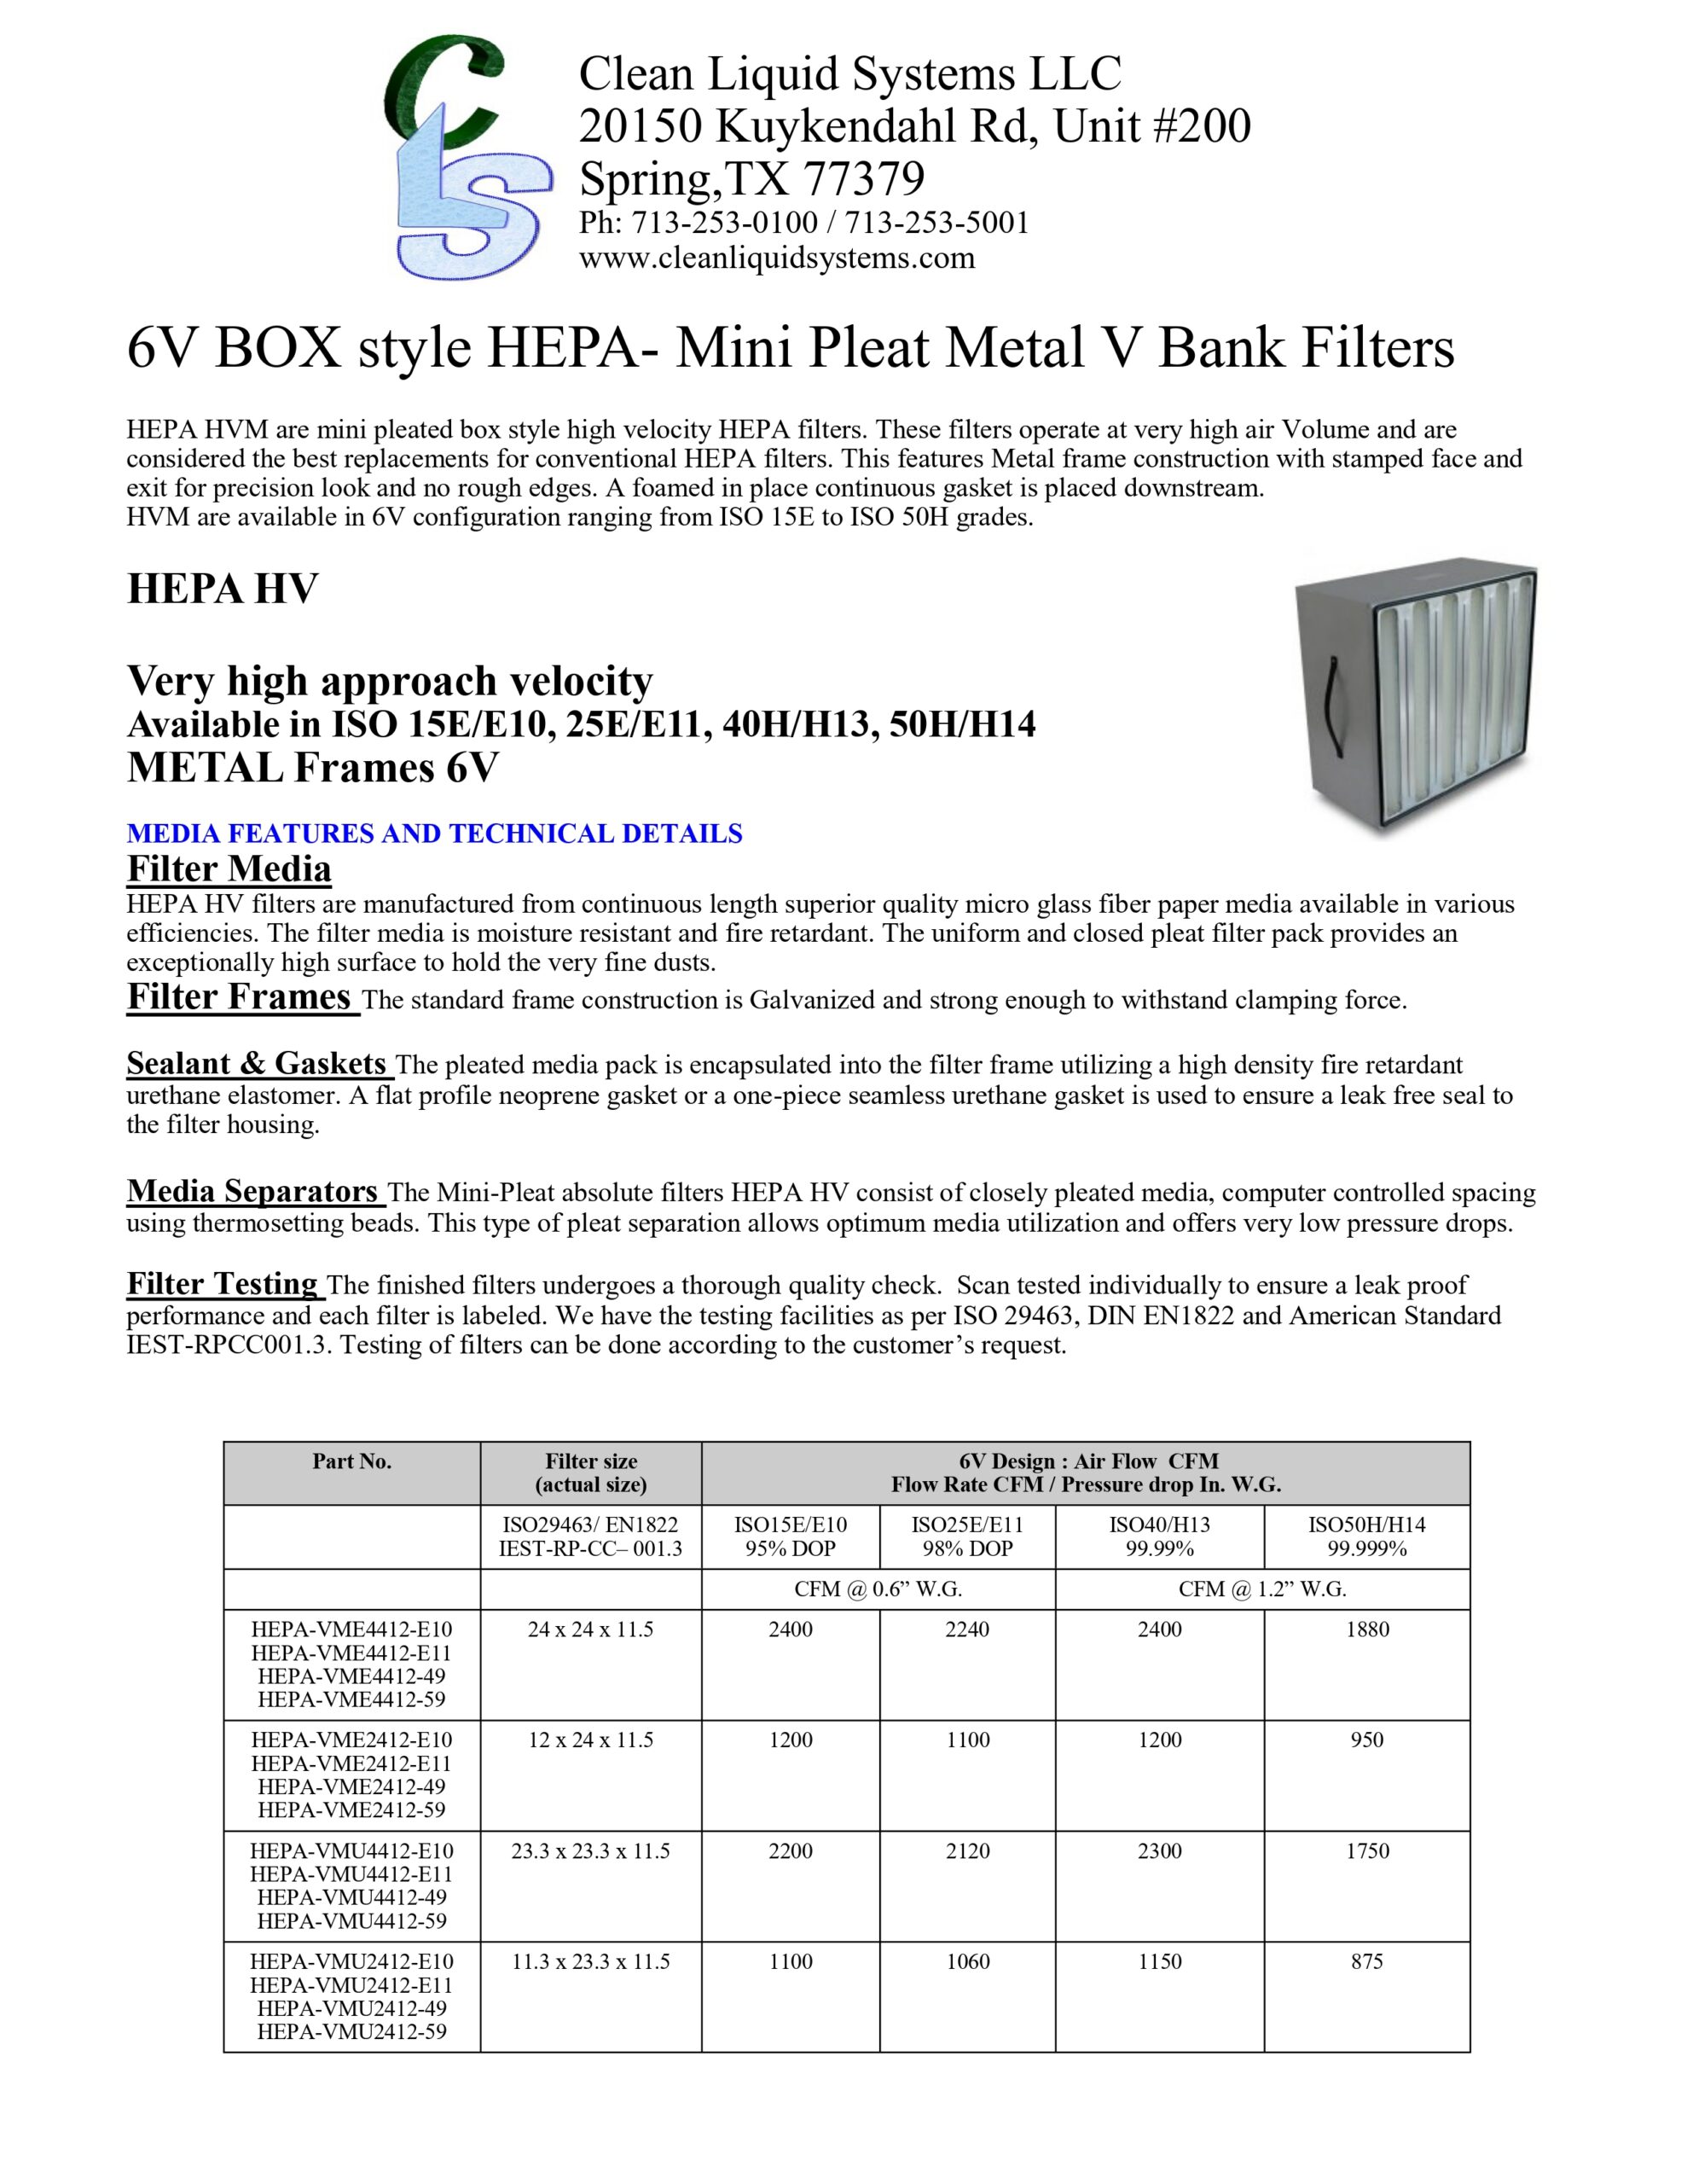 6V BOX style HEPA- Mini Pleat Metal V Bank Filters